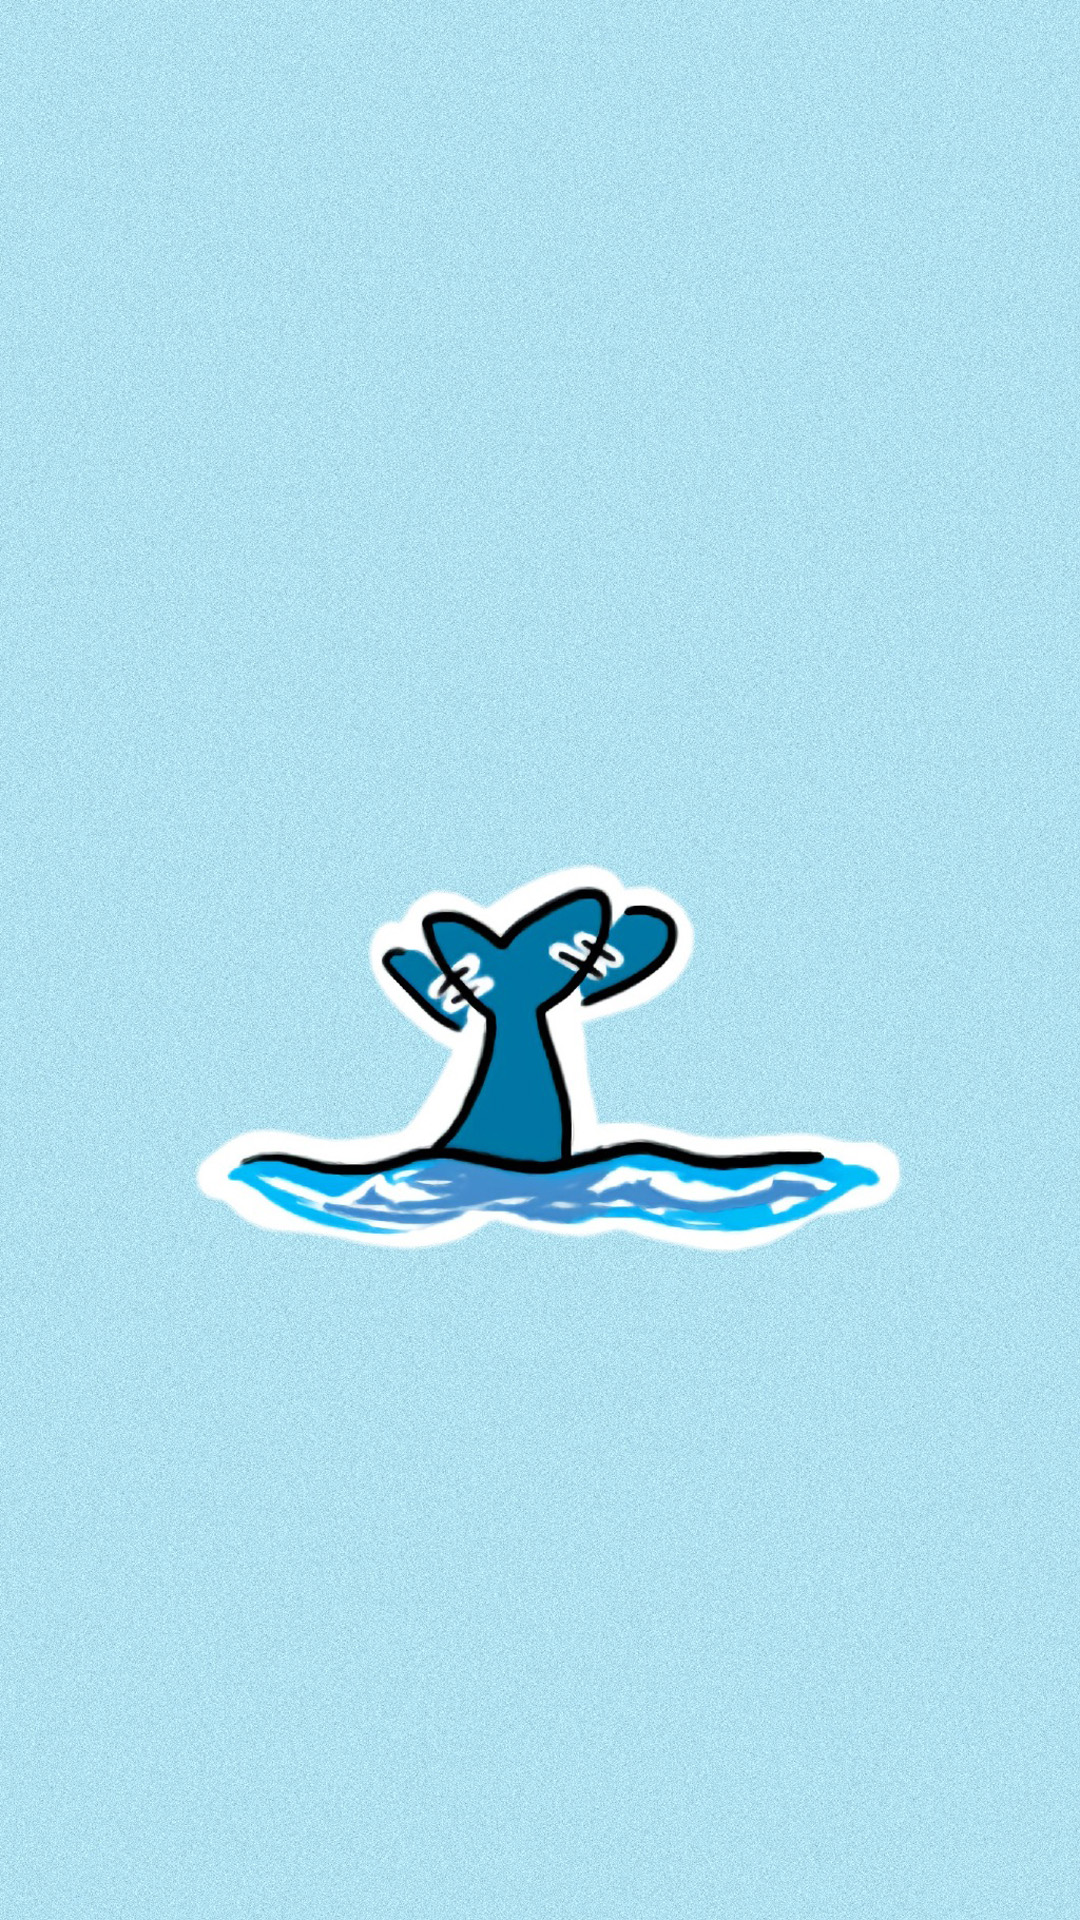 apk小游戏可爱卡通海豚图片手机壁纸安卓手机壁纸高清截图5